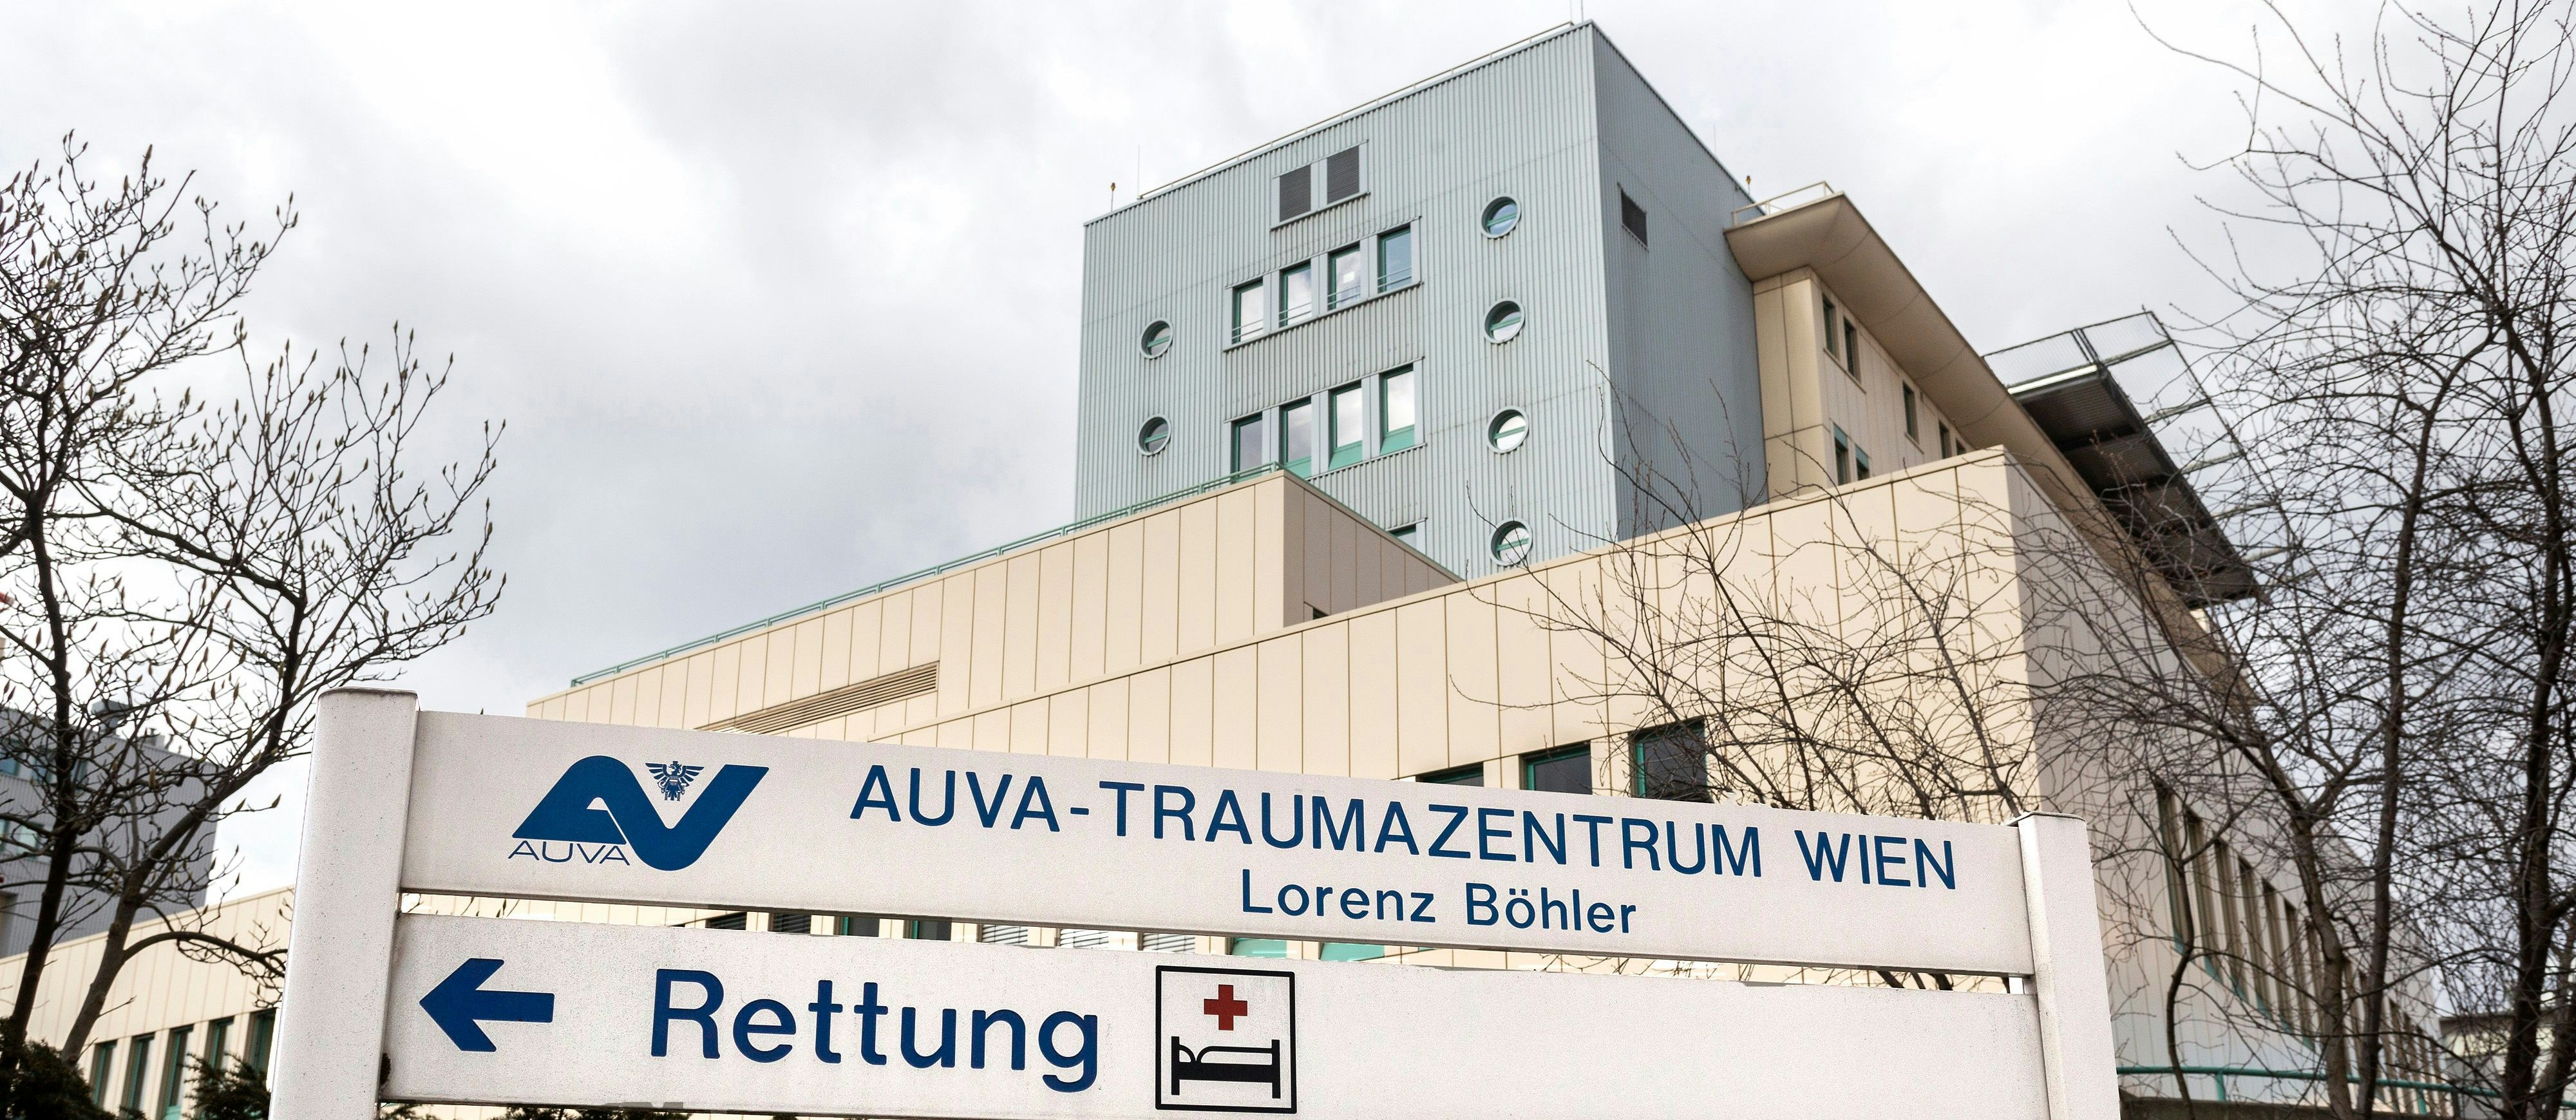 Das AUVA Traumazentrum Lorenz Böhler soll (vorübergehend?) zugesperrt werden